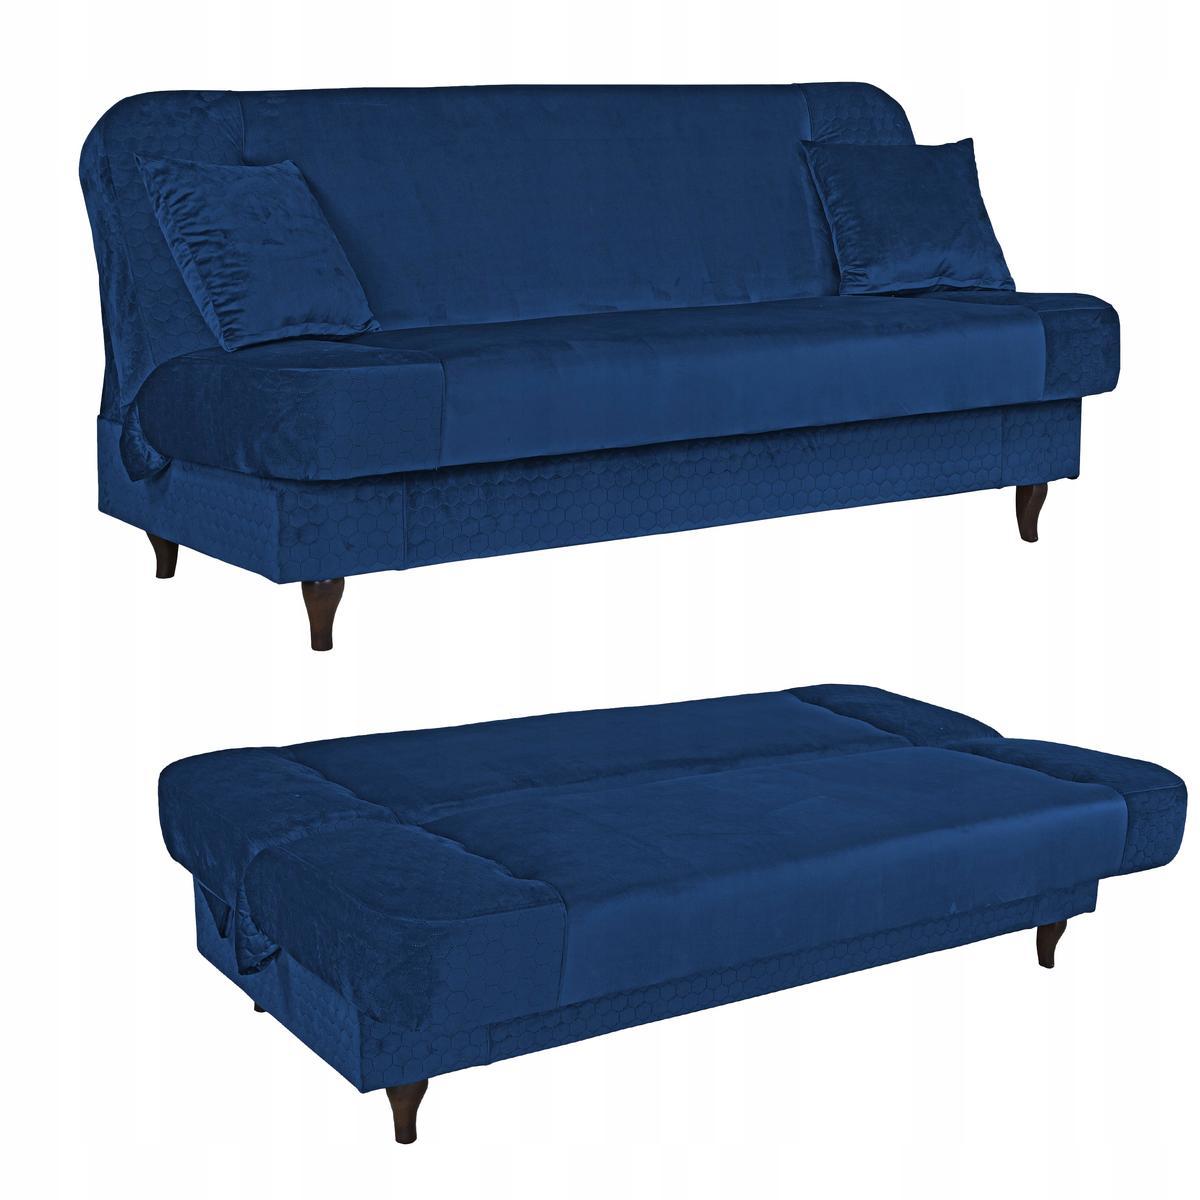 Wersalka sofa kanapa rozkładana Iza Family Meble nr. 1